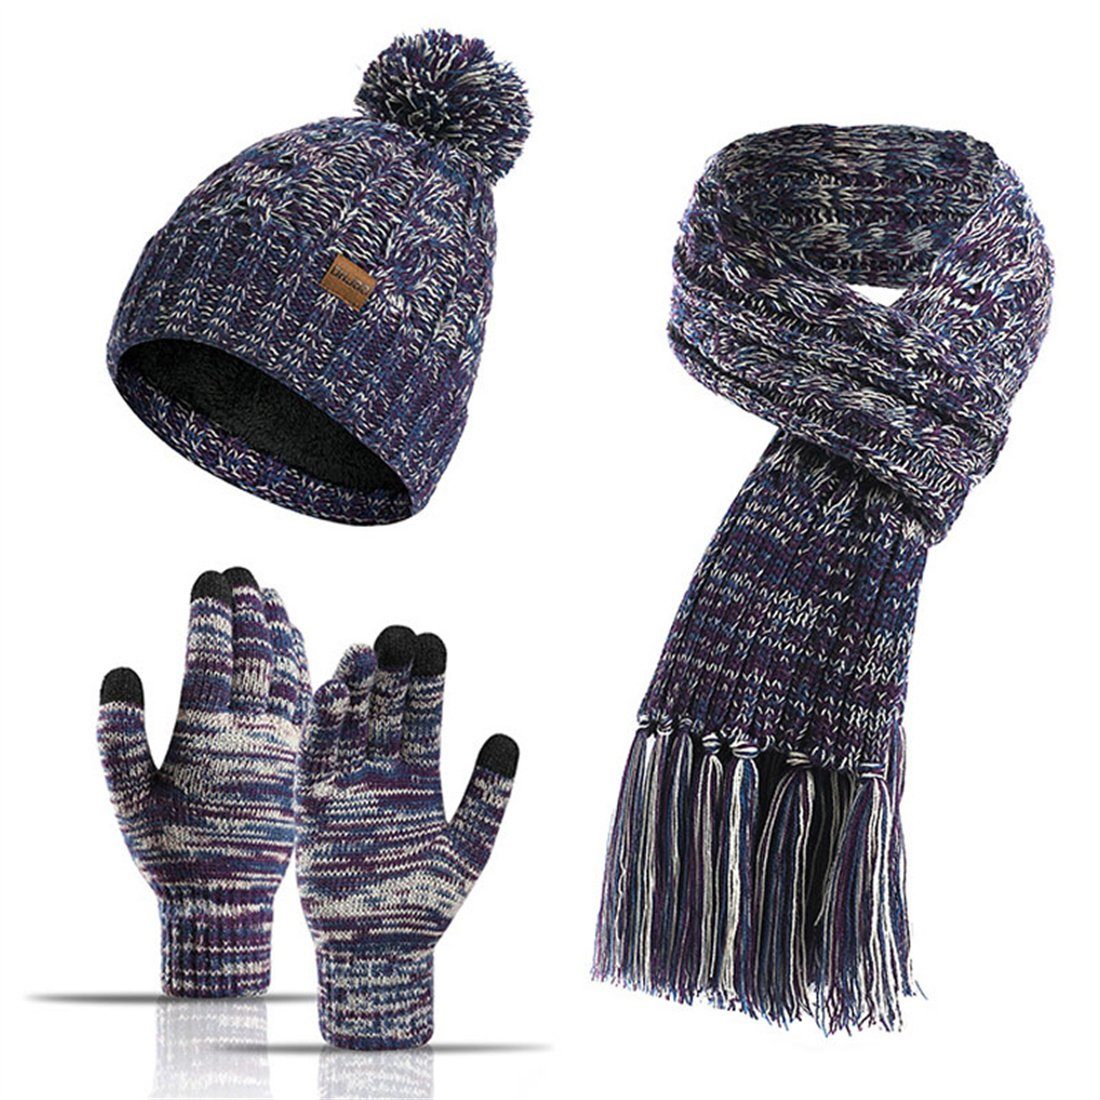 DÖRÖY Strickmütze Wintermütze aus Wolle, Mütze + Schal + Touchscreen-Handschuhe 3er-Set Lila